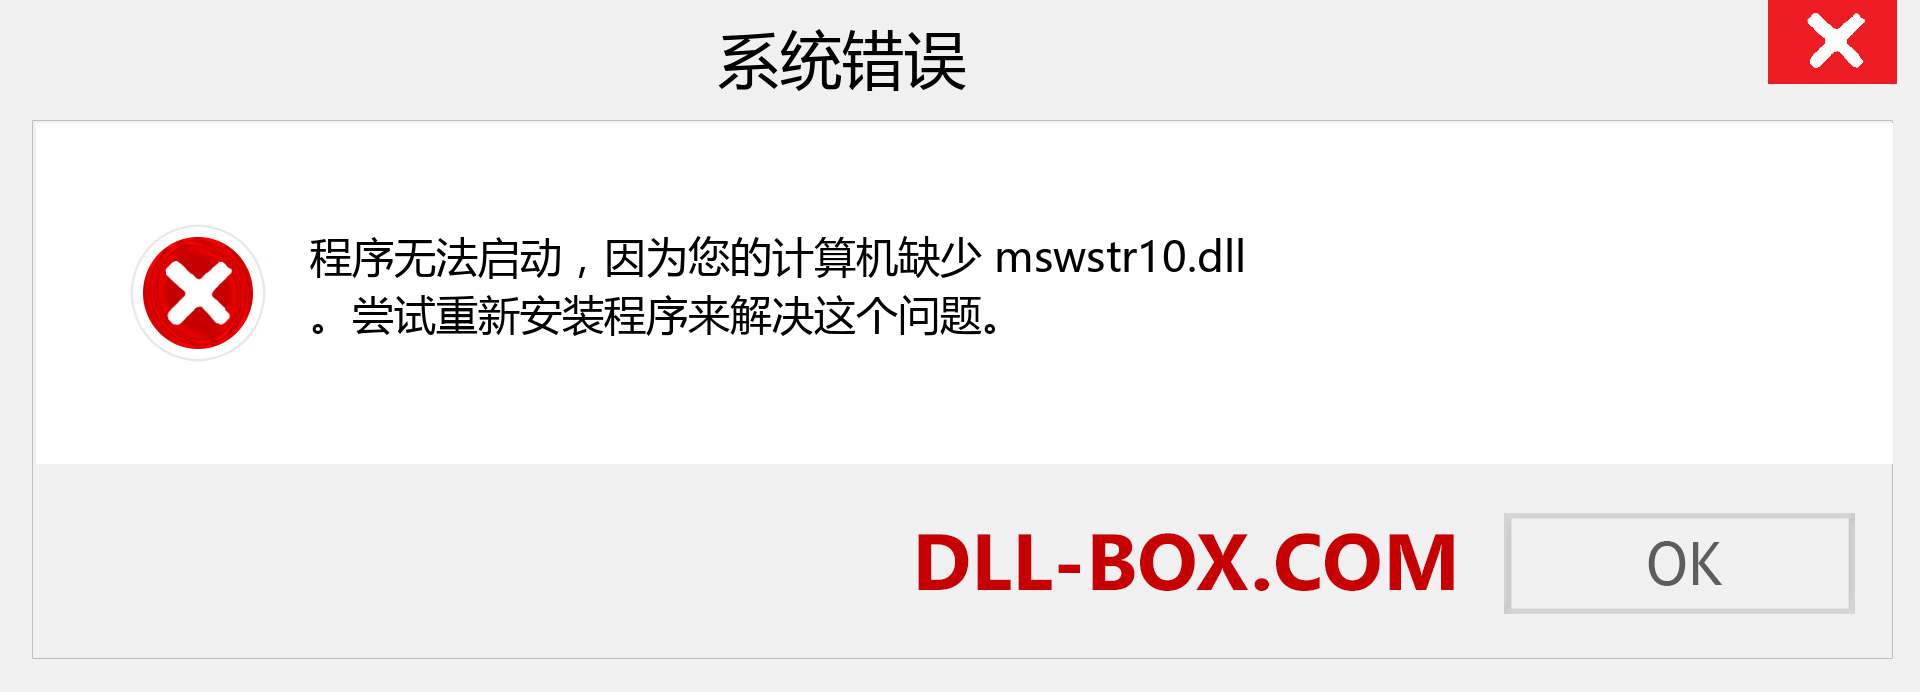 mswstr10.dll 文件丢失？。 适用于 Windows 7、8、10 的下载 - 修复 Windows、照片、图像上的 mswstr10 dll 丢失错误